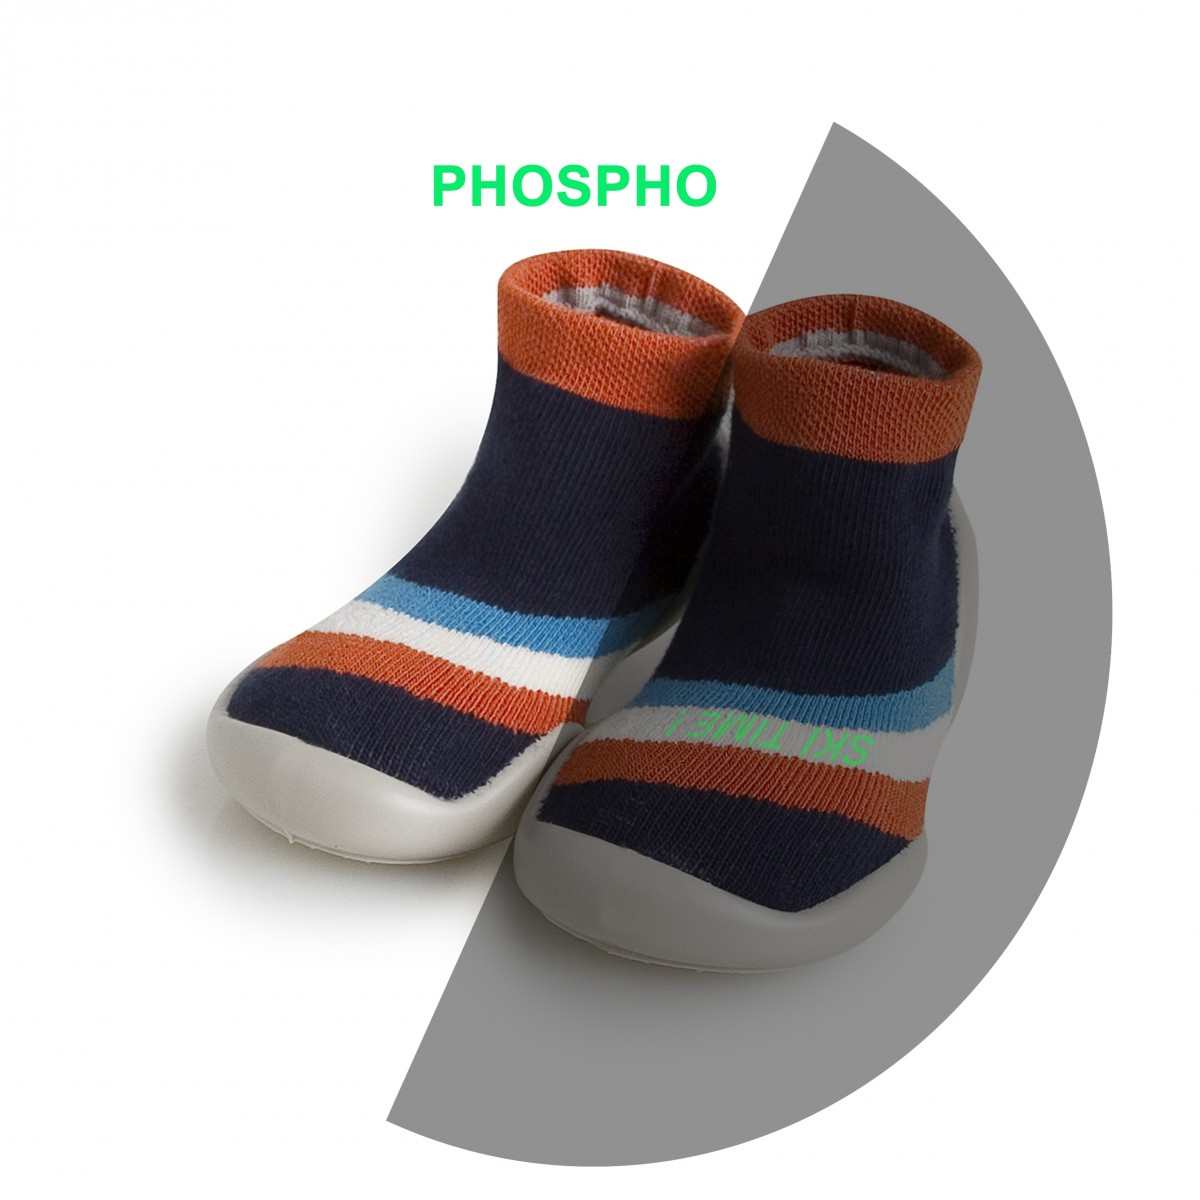 Le Collégien  Chaussons chaussettes Chamonix phosphorescent pour enfants